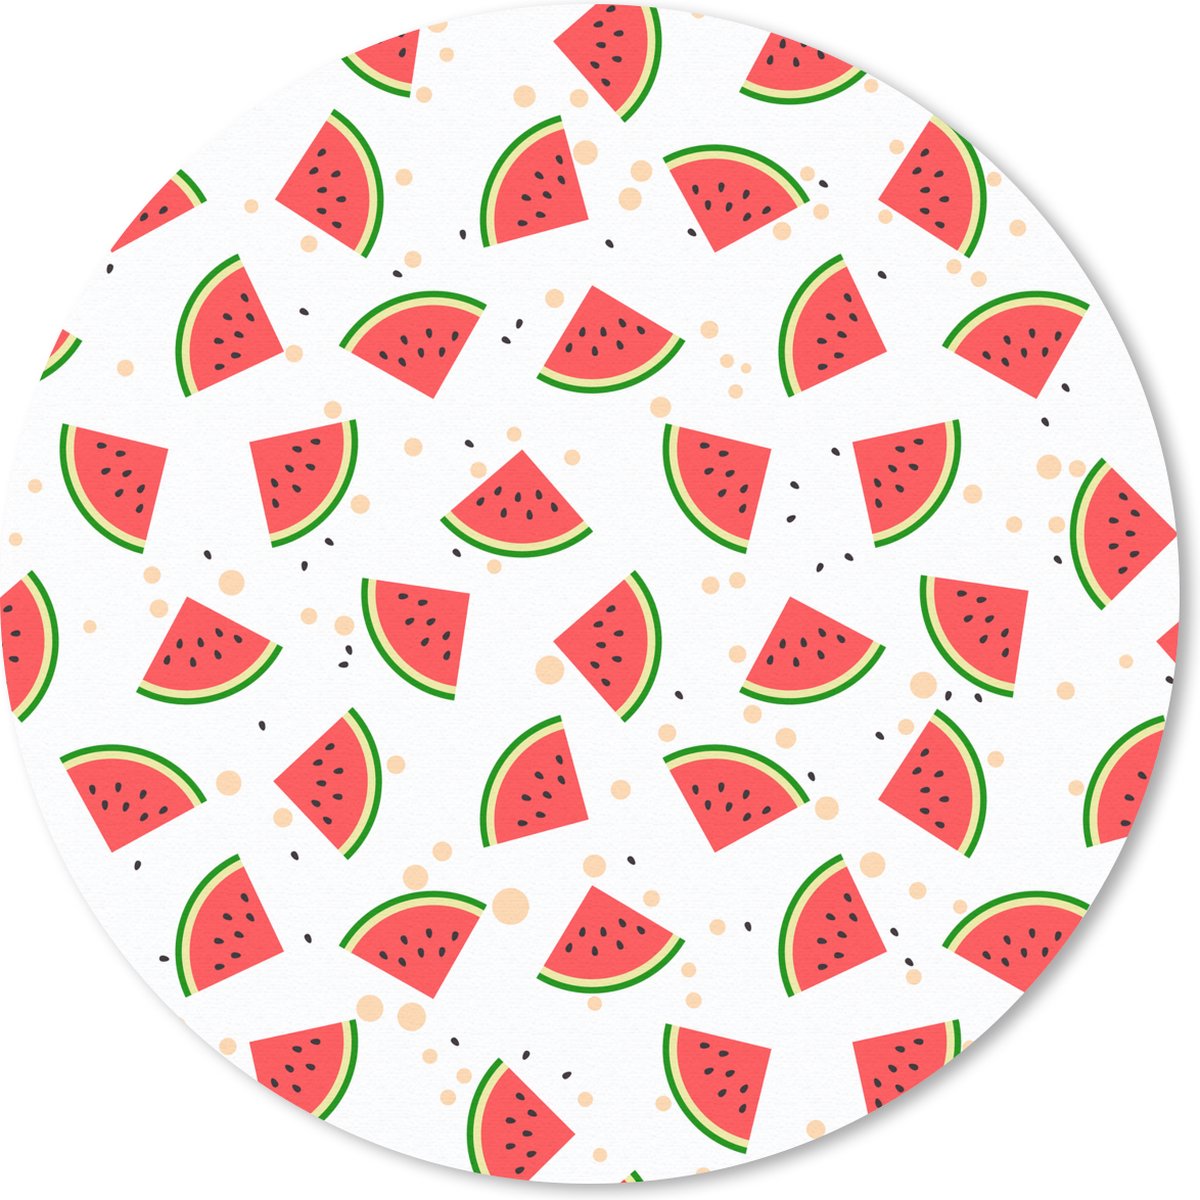 Muismat - Mousepad - Rond - Zomer - Watermeloen - Roze - 20x20 cm - Ronde muismat